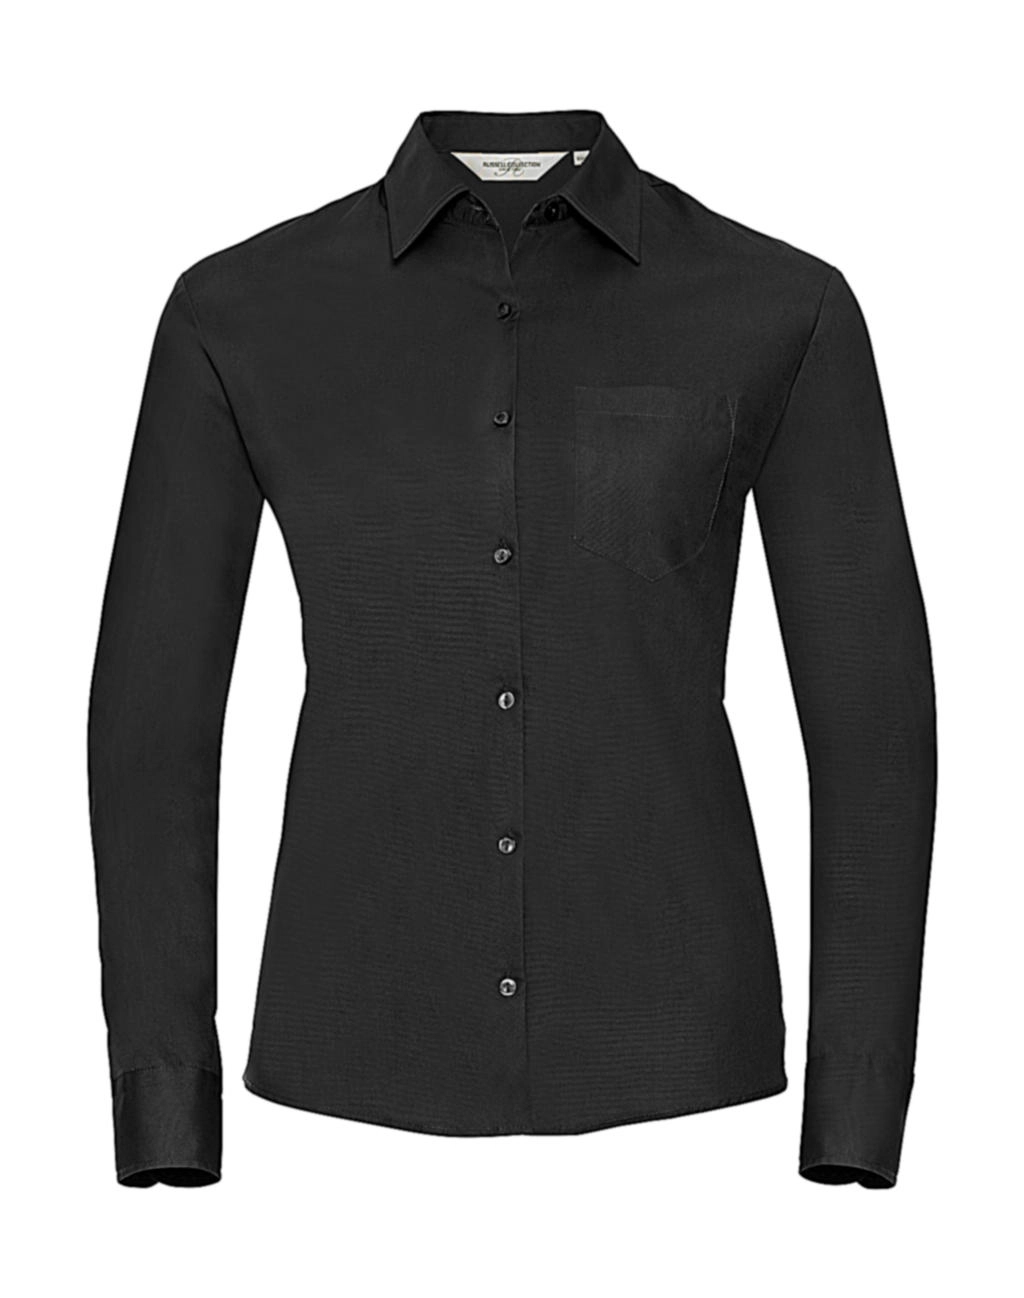 Ladies` Cotton Poplin Shirt LS zum Besticken und Bedrucken in der Farbe Black mit Ihren Logo, Schriftzug oder Motiv.